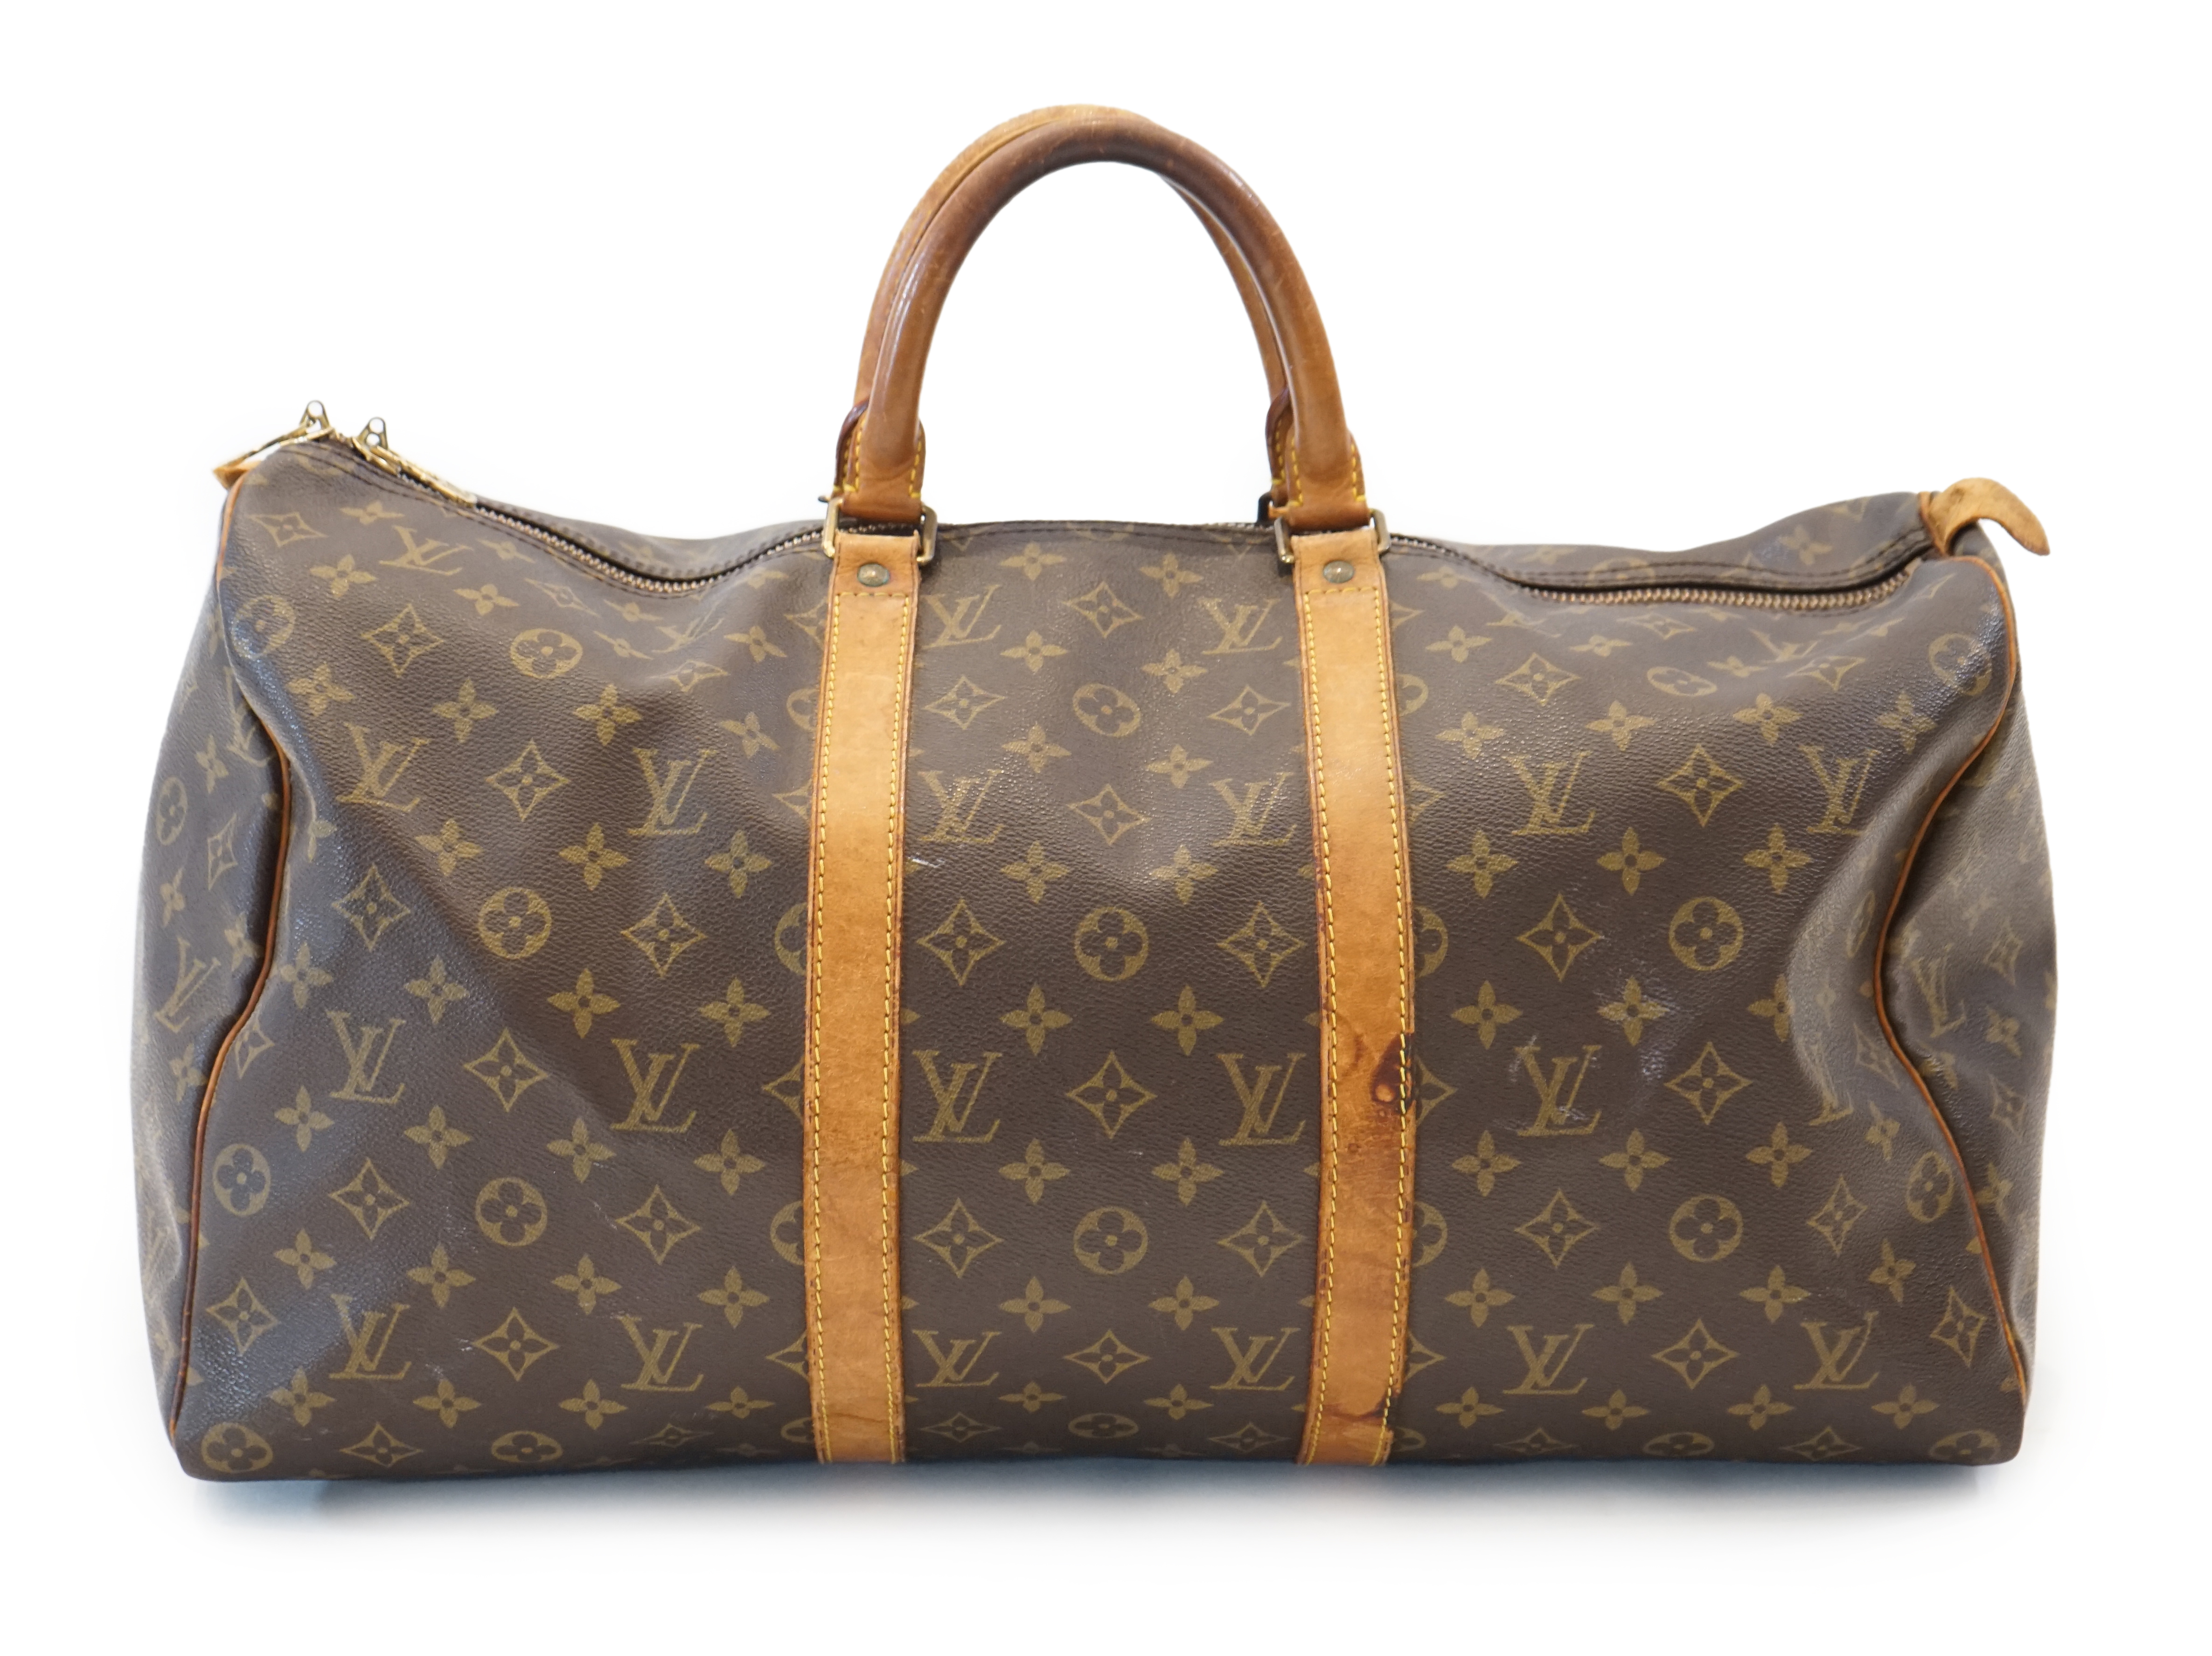 A Louis Vuitton Speedy 40 bag width 22cm, length 51cm, height 28cm